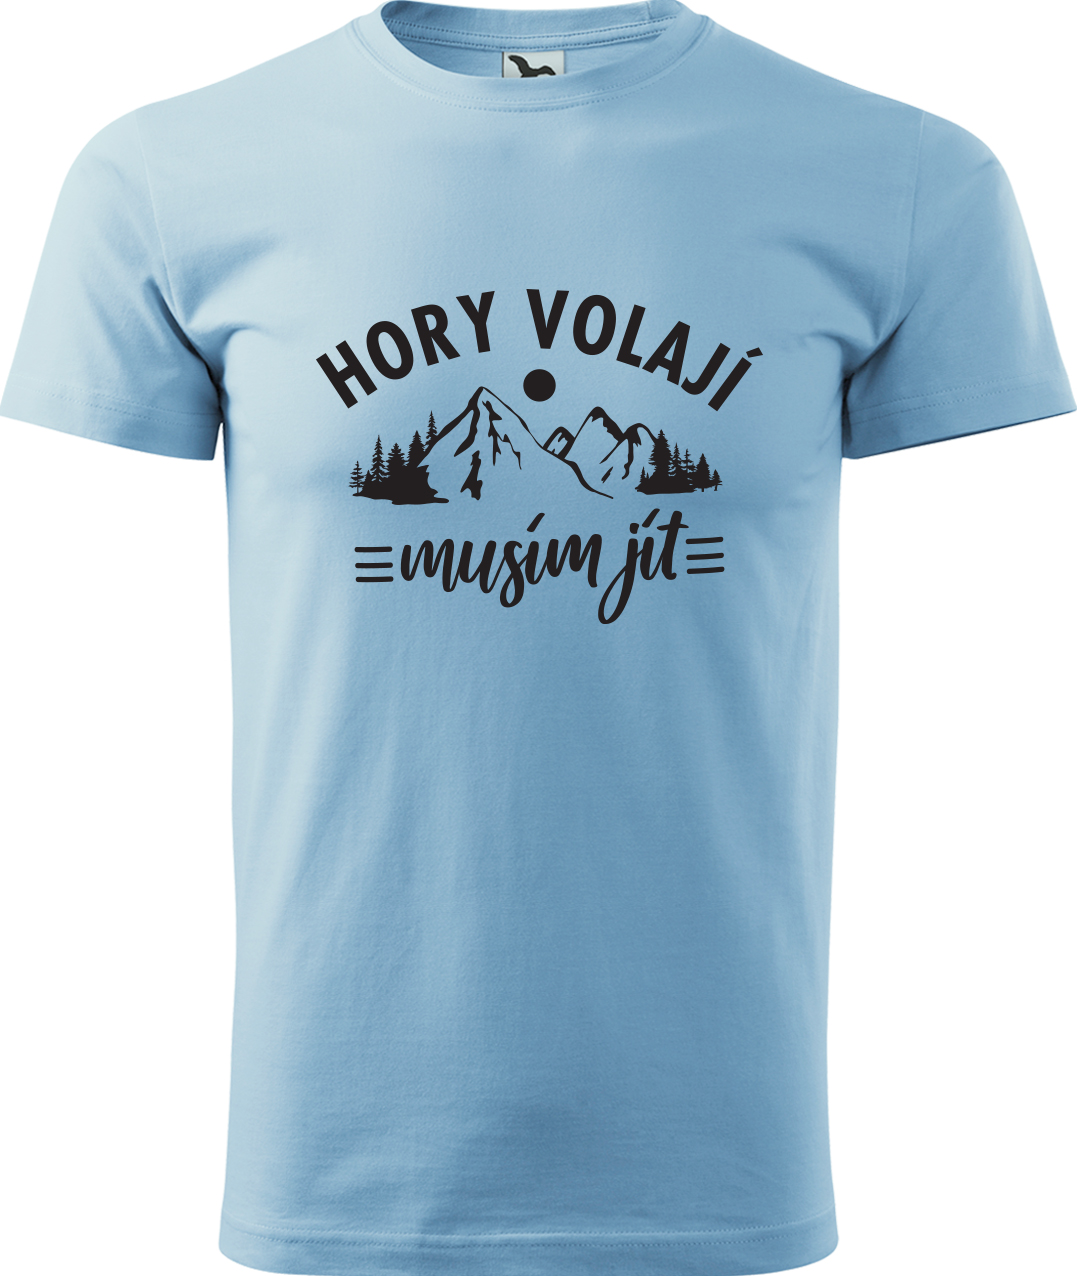 Pánské tričko na hory - Hory volají, musím jít Velikost: 2XL, Barva: Nebesky modrá (15), Střih: pánský